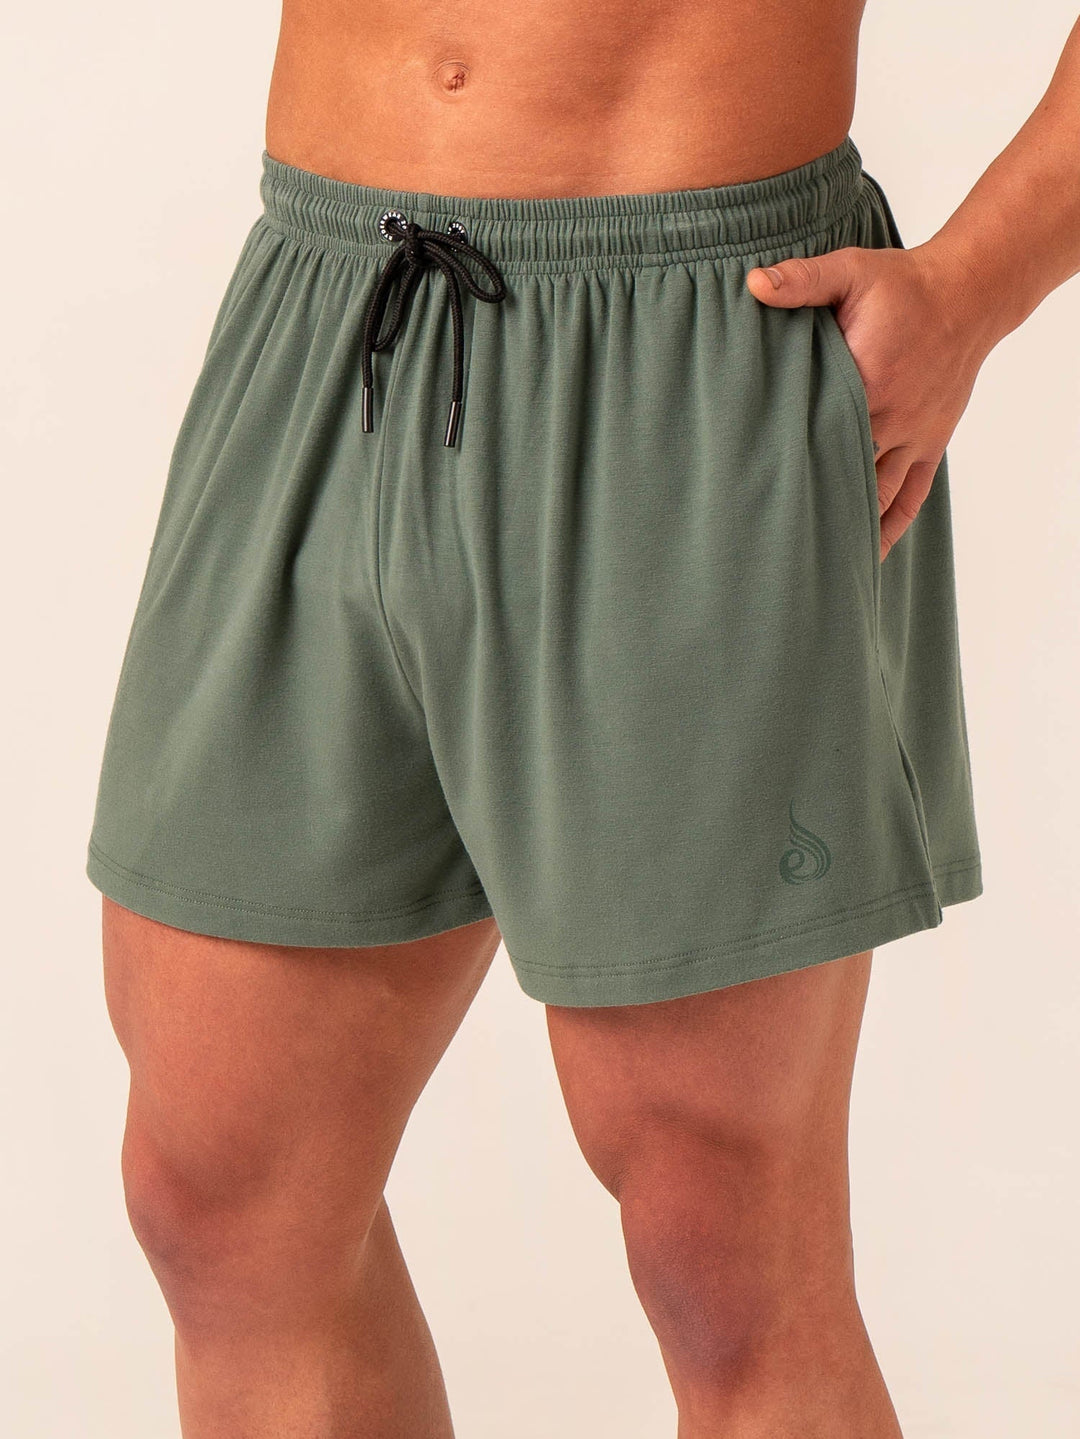 Arnie Shorts - Fern Green Clothing Ryderwear 